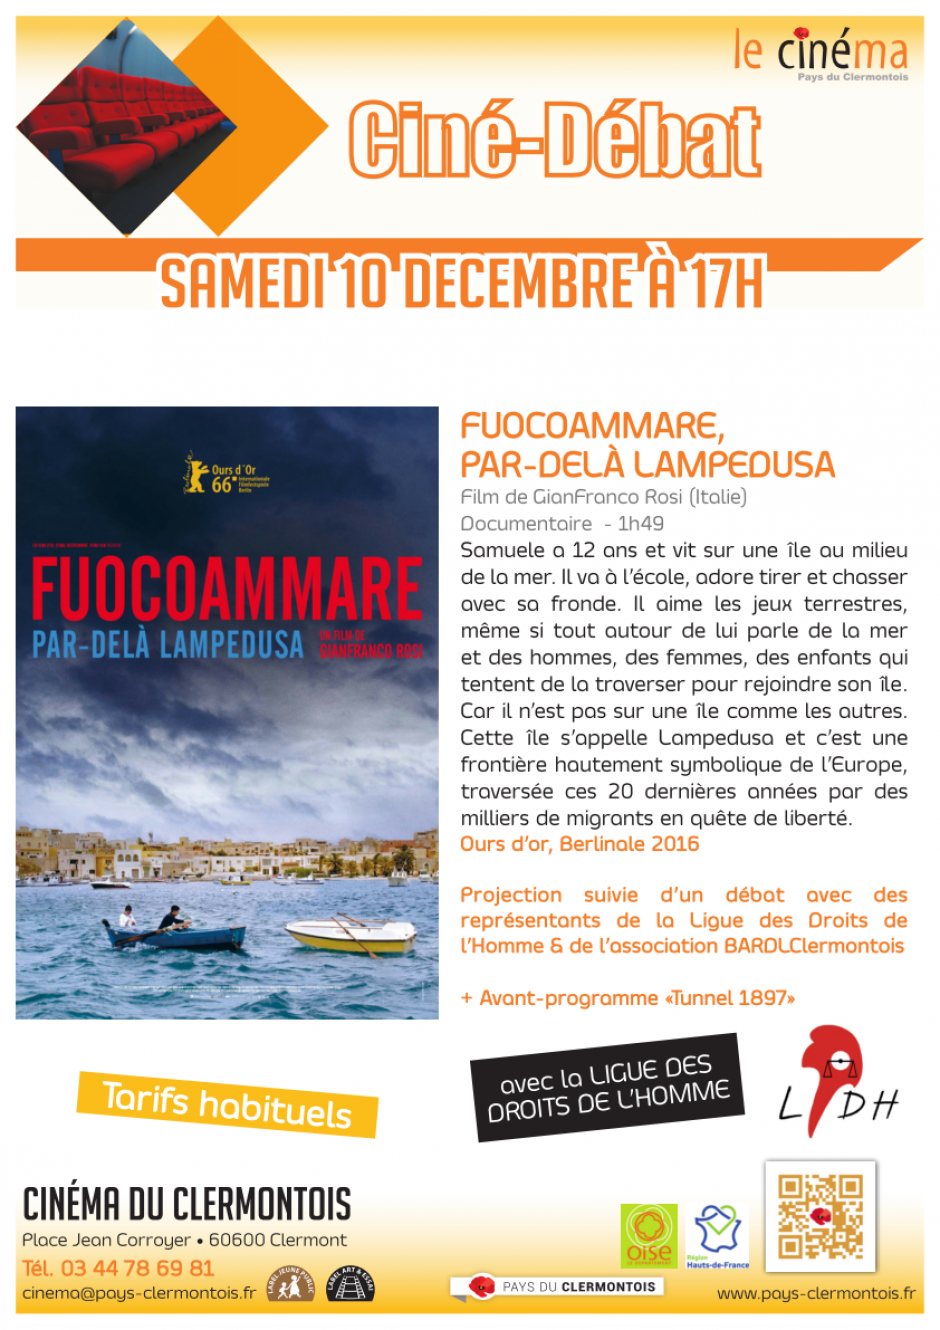 10 décembre, Clermont - LDH-Ciné-débat « Fuocoammare, par-delà Lampedusa »